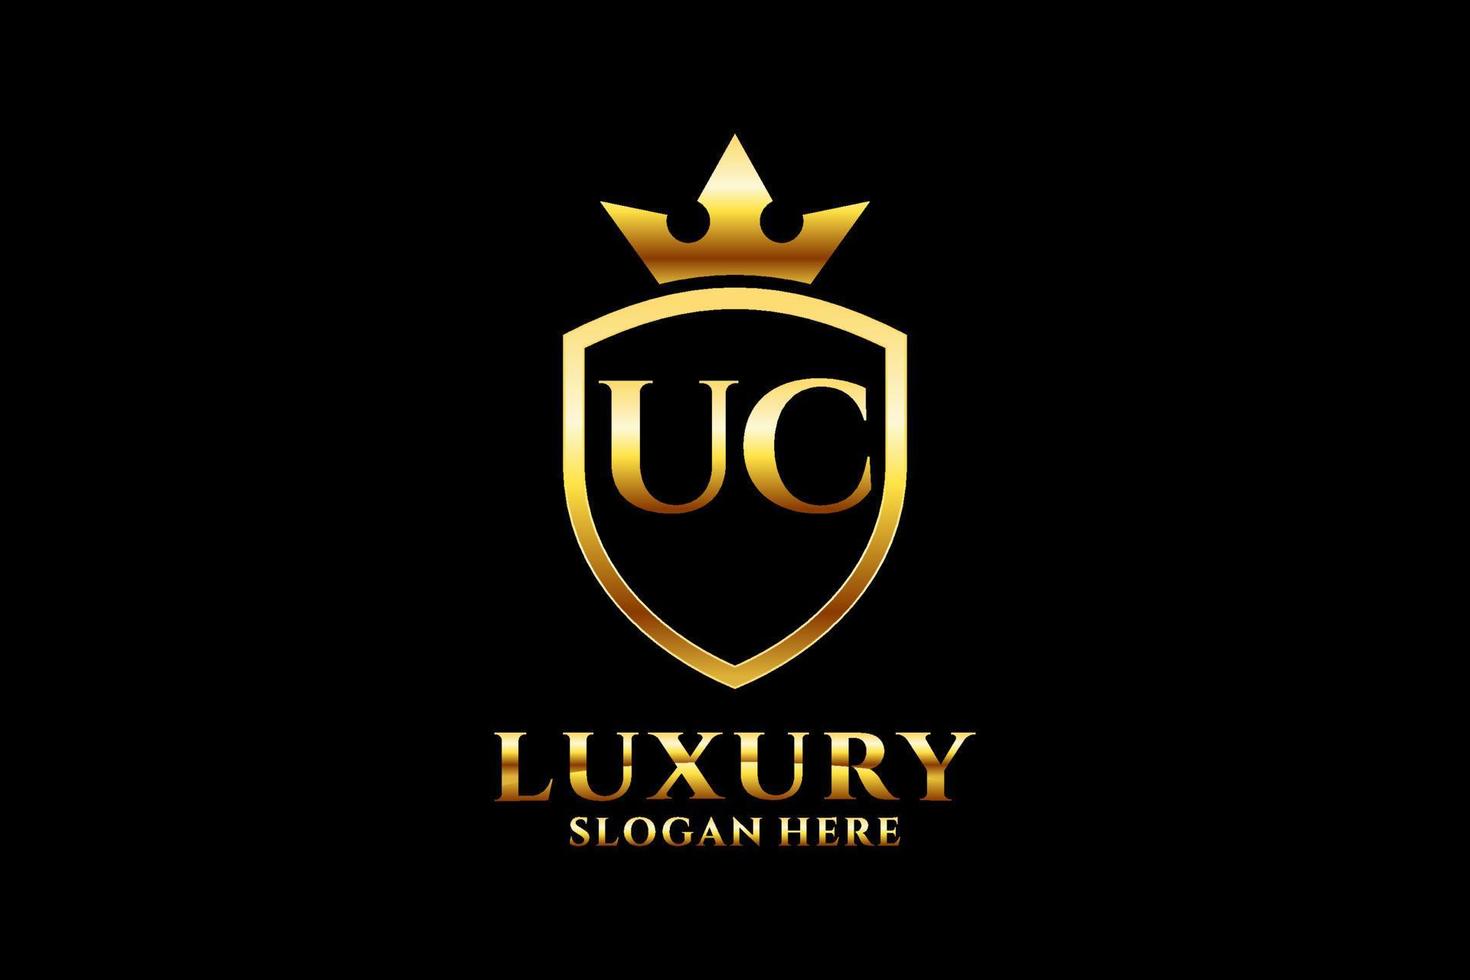 logo monogramme de luxe élégant initial uc ou modèle de badge avec volutes et couronne royale - parfait pour les projets de marque de luxe vecteur